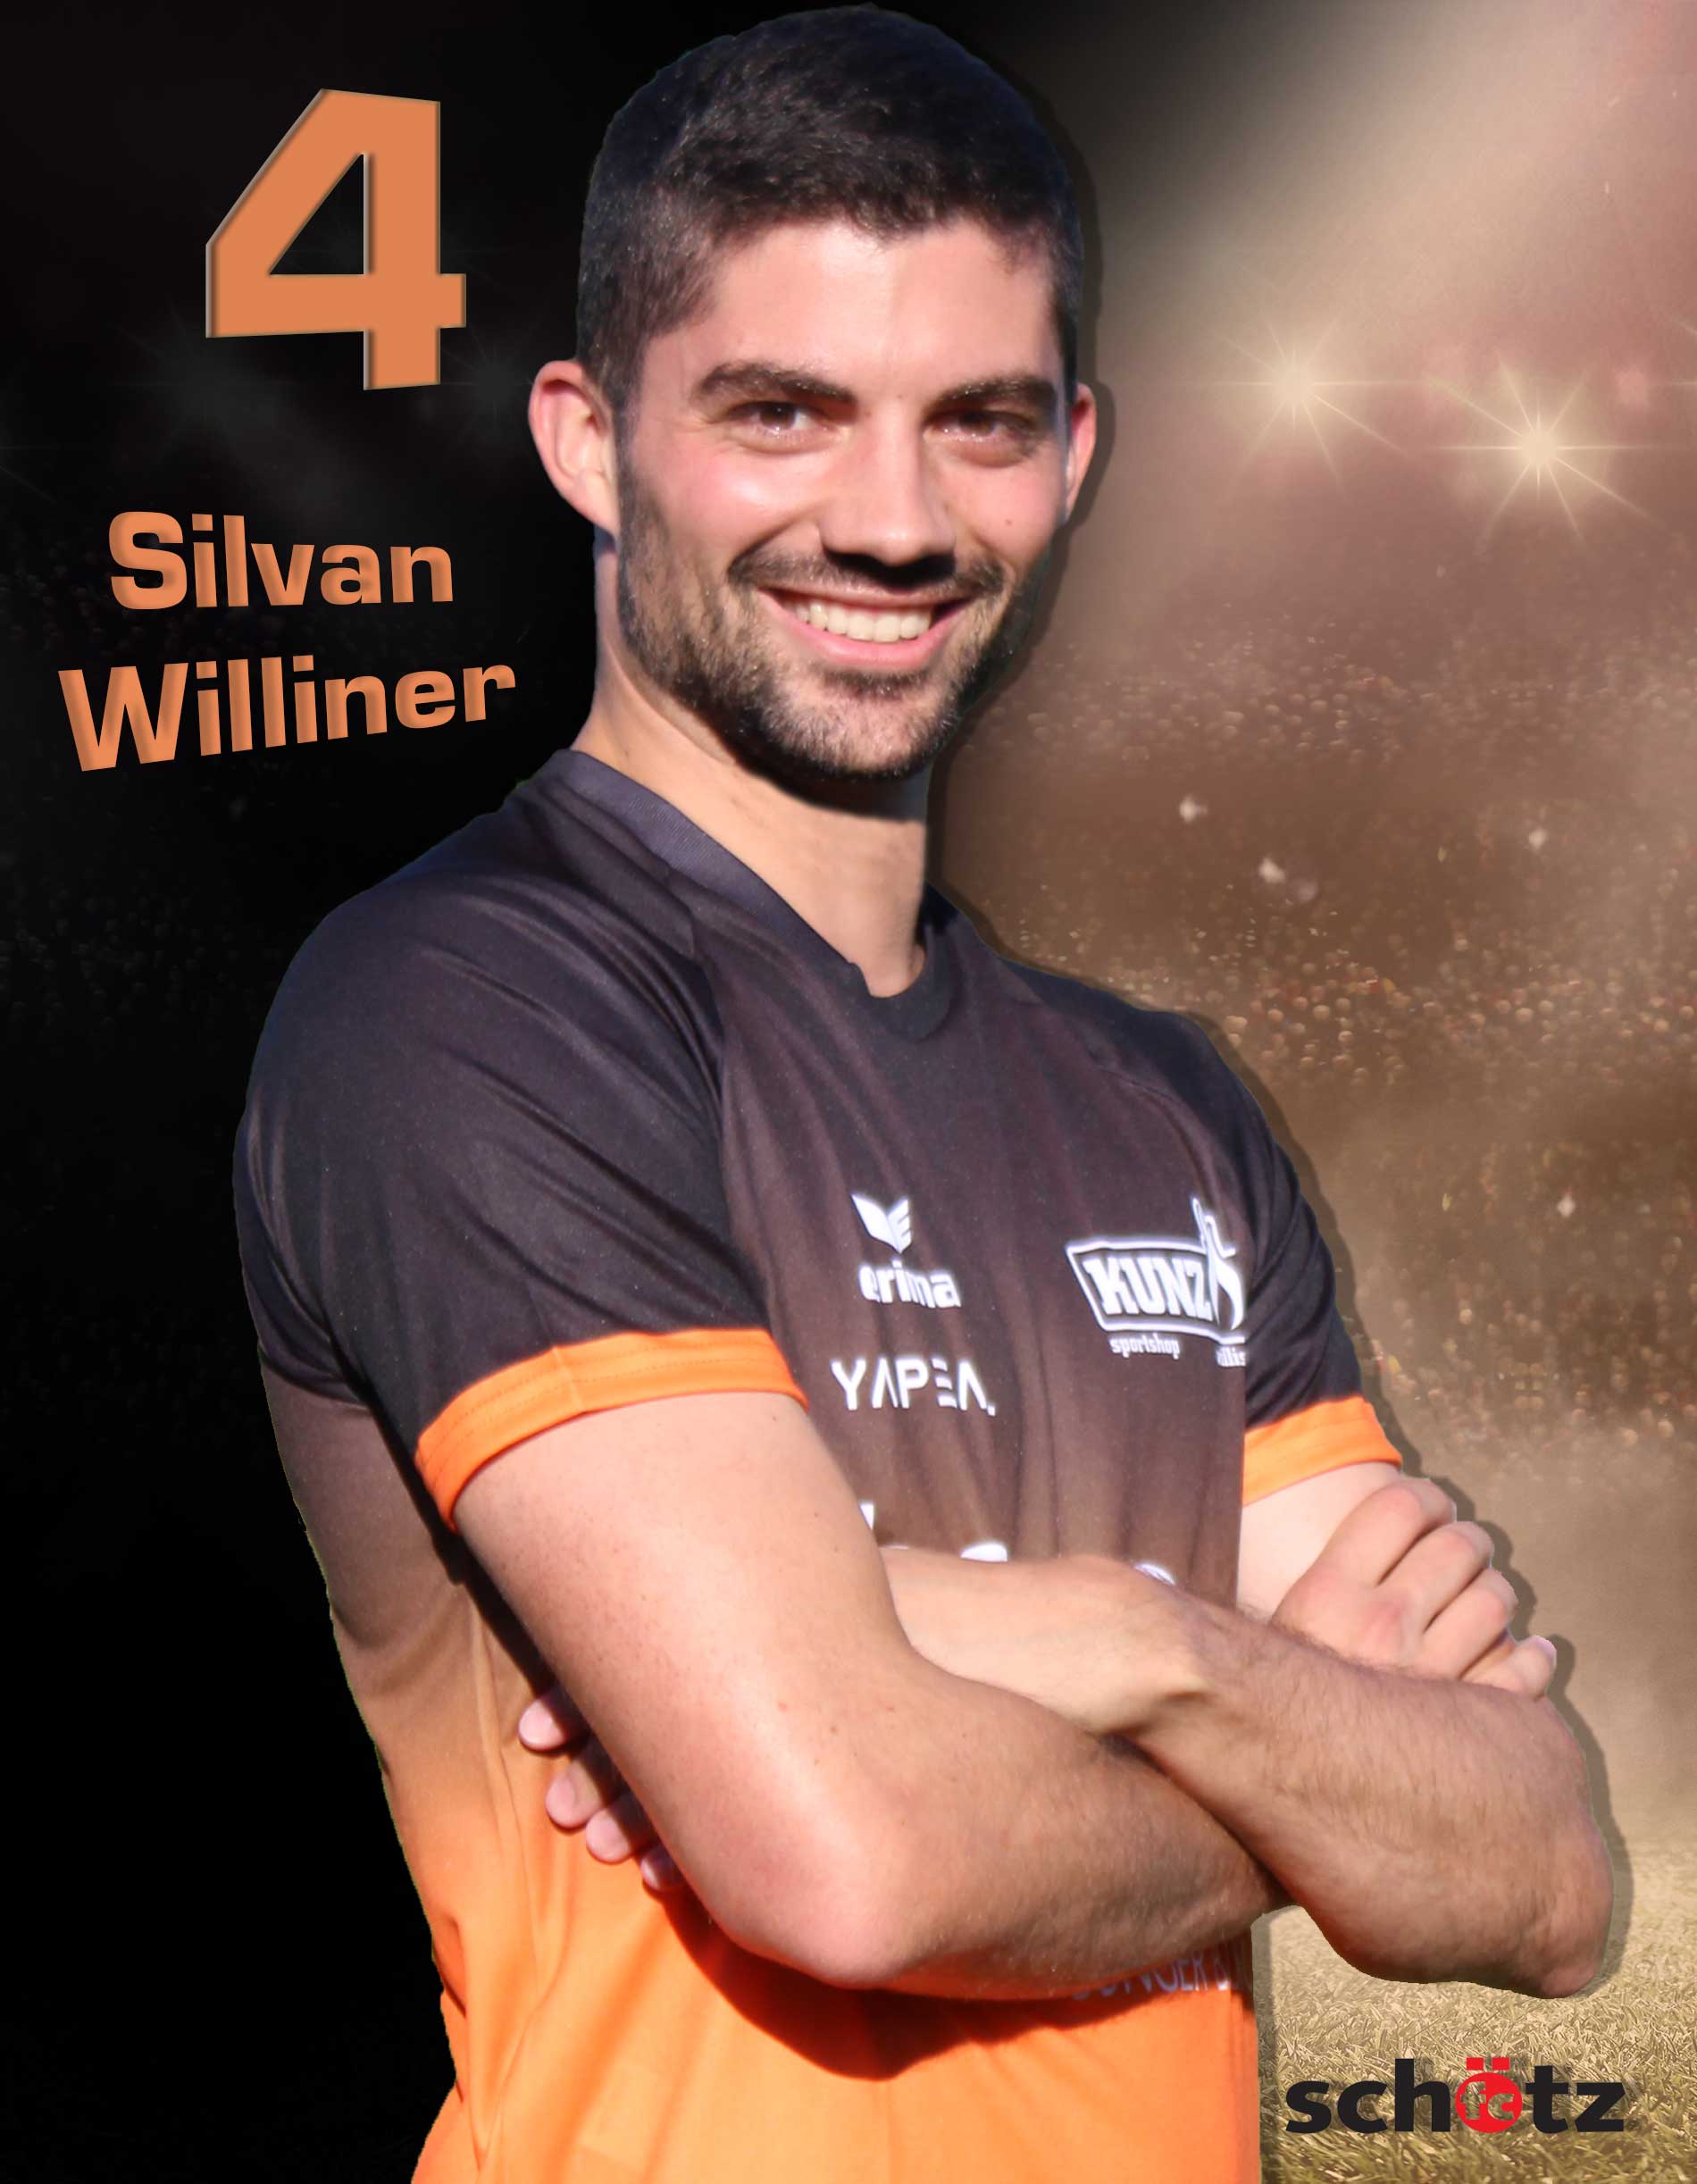 Silvan Williner